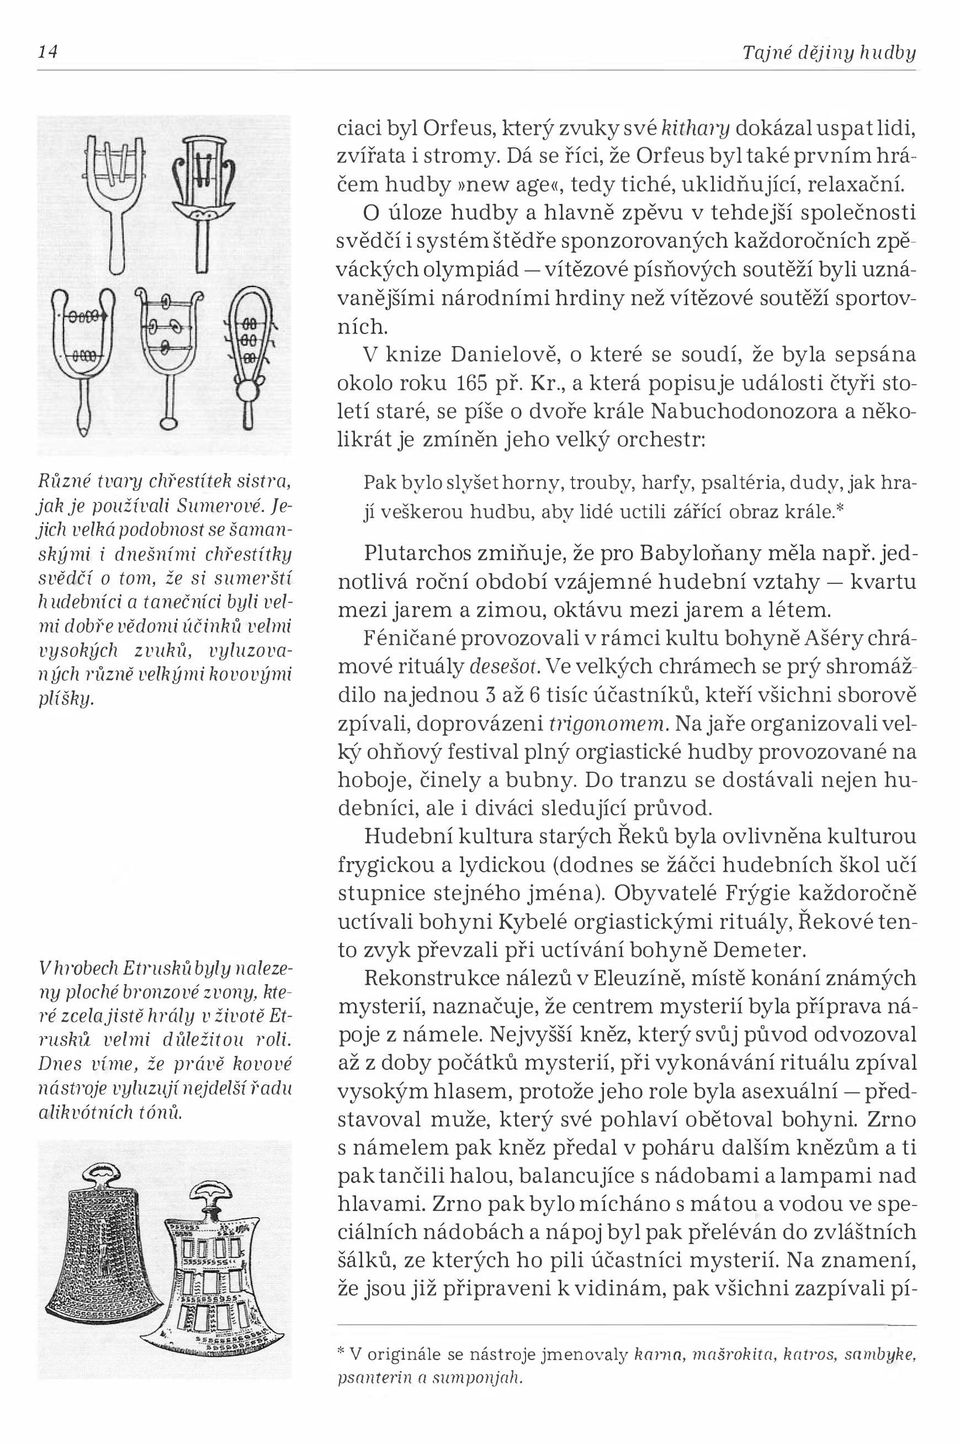 plíšky. V hrobech Etrusků byly nalezeny ploché bronzové zvony, které zeelajistě hrály v životě Et TUskli. velmi důležitou roli.